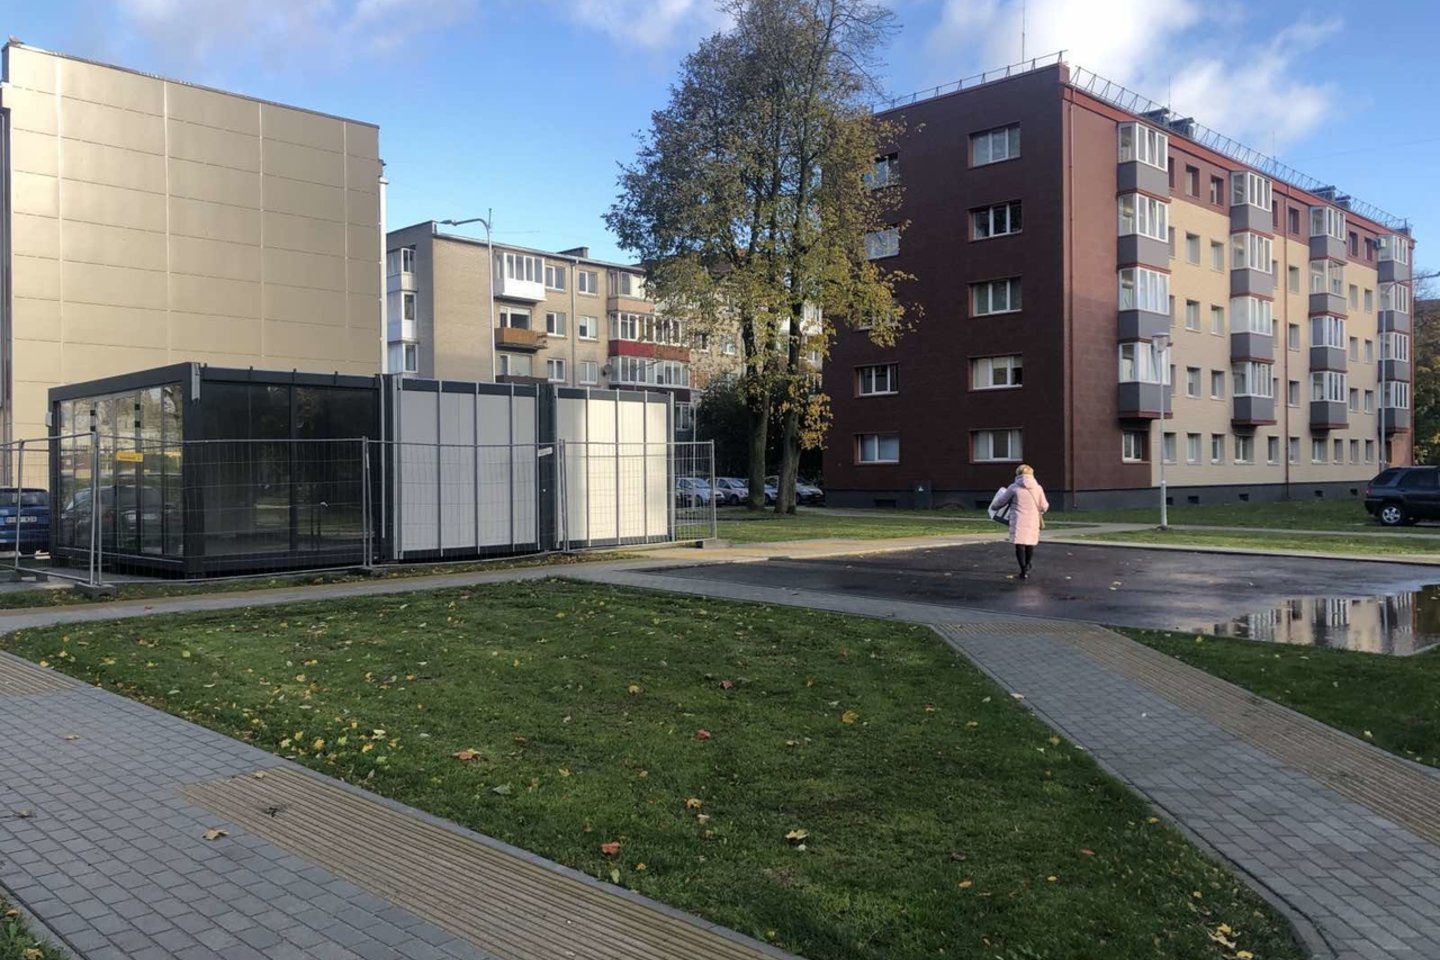  Klaipėdoje tvarkomas Rumpiškės daugiabučių kvartalas<br>Klaipėdos savivaldybės nuotr. 